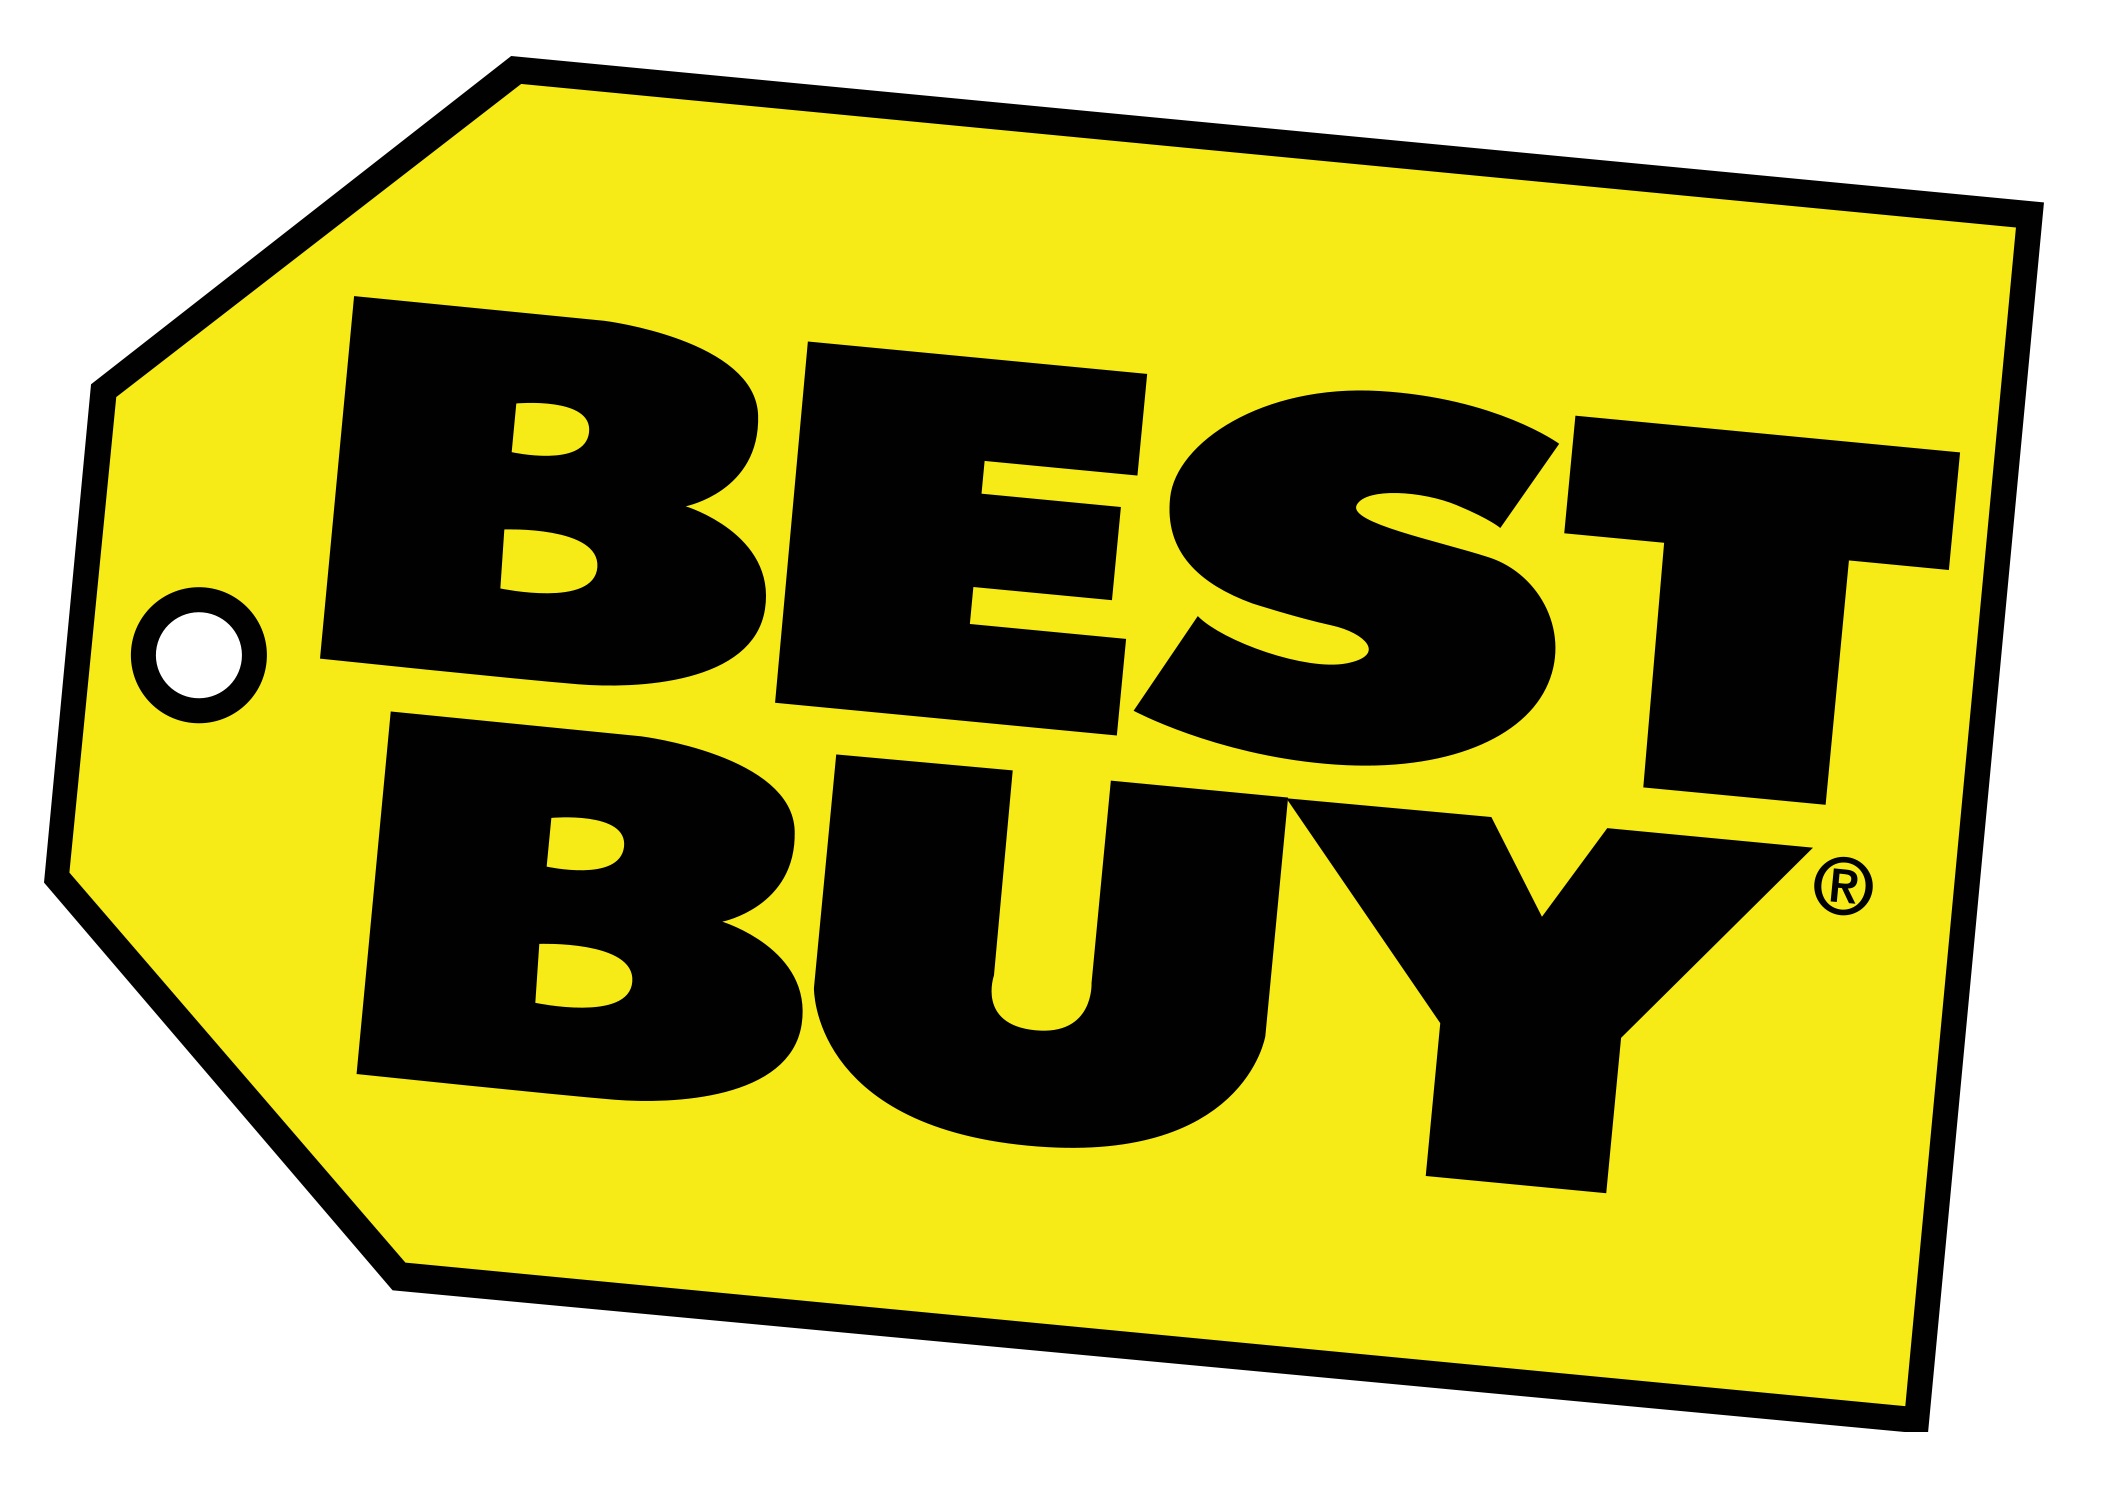 Best_buy_logo-3.jpg